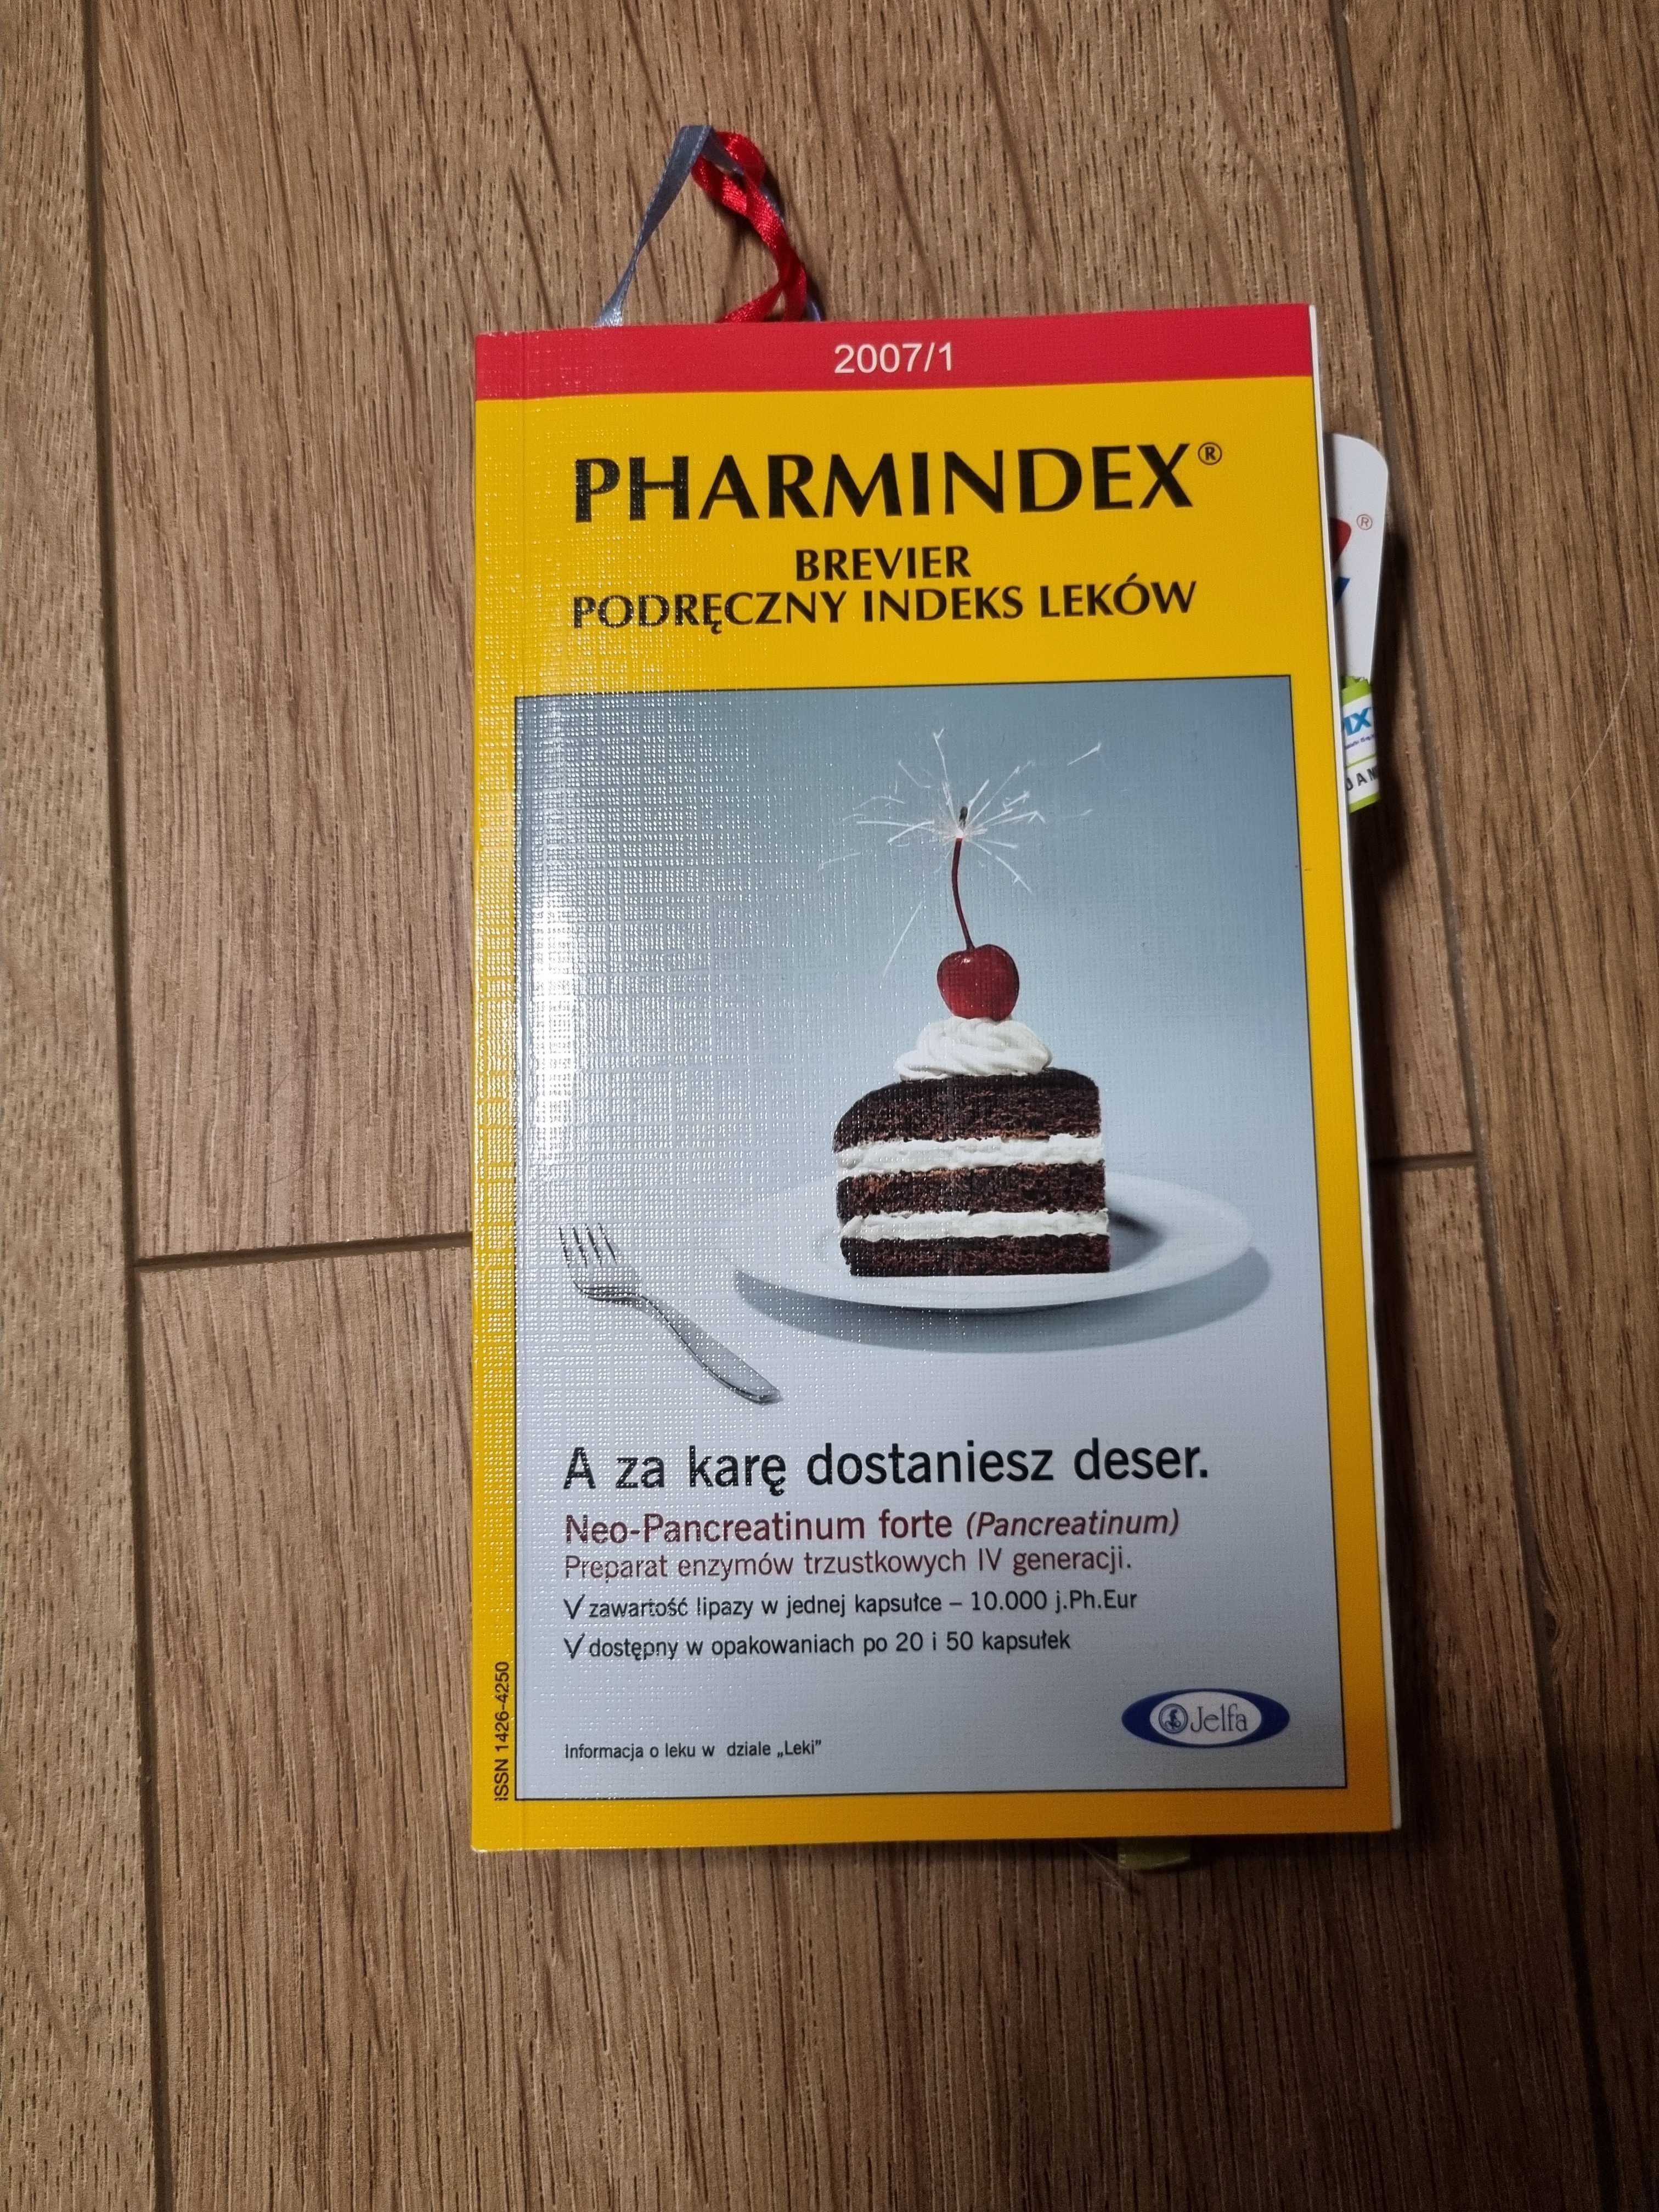 Pharmindex 2007/1 podręczny index leków